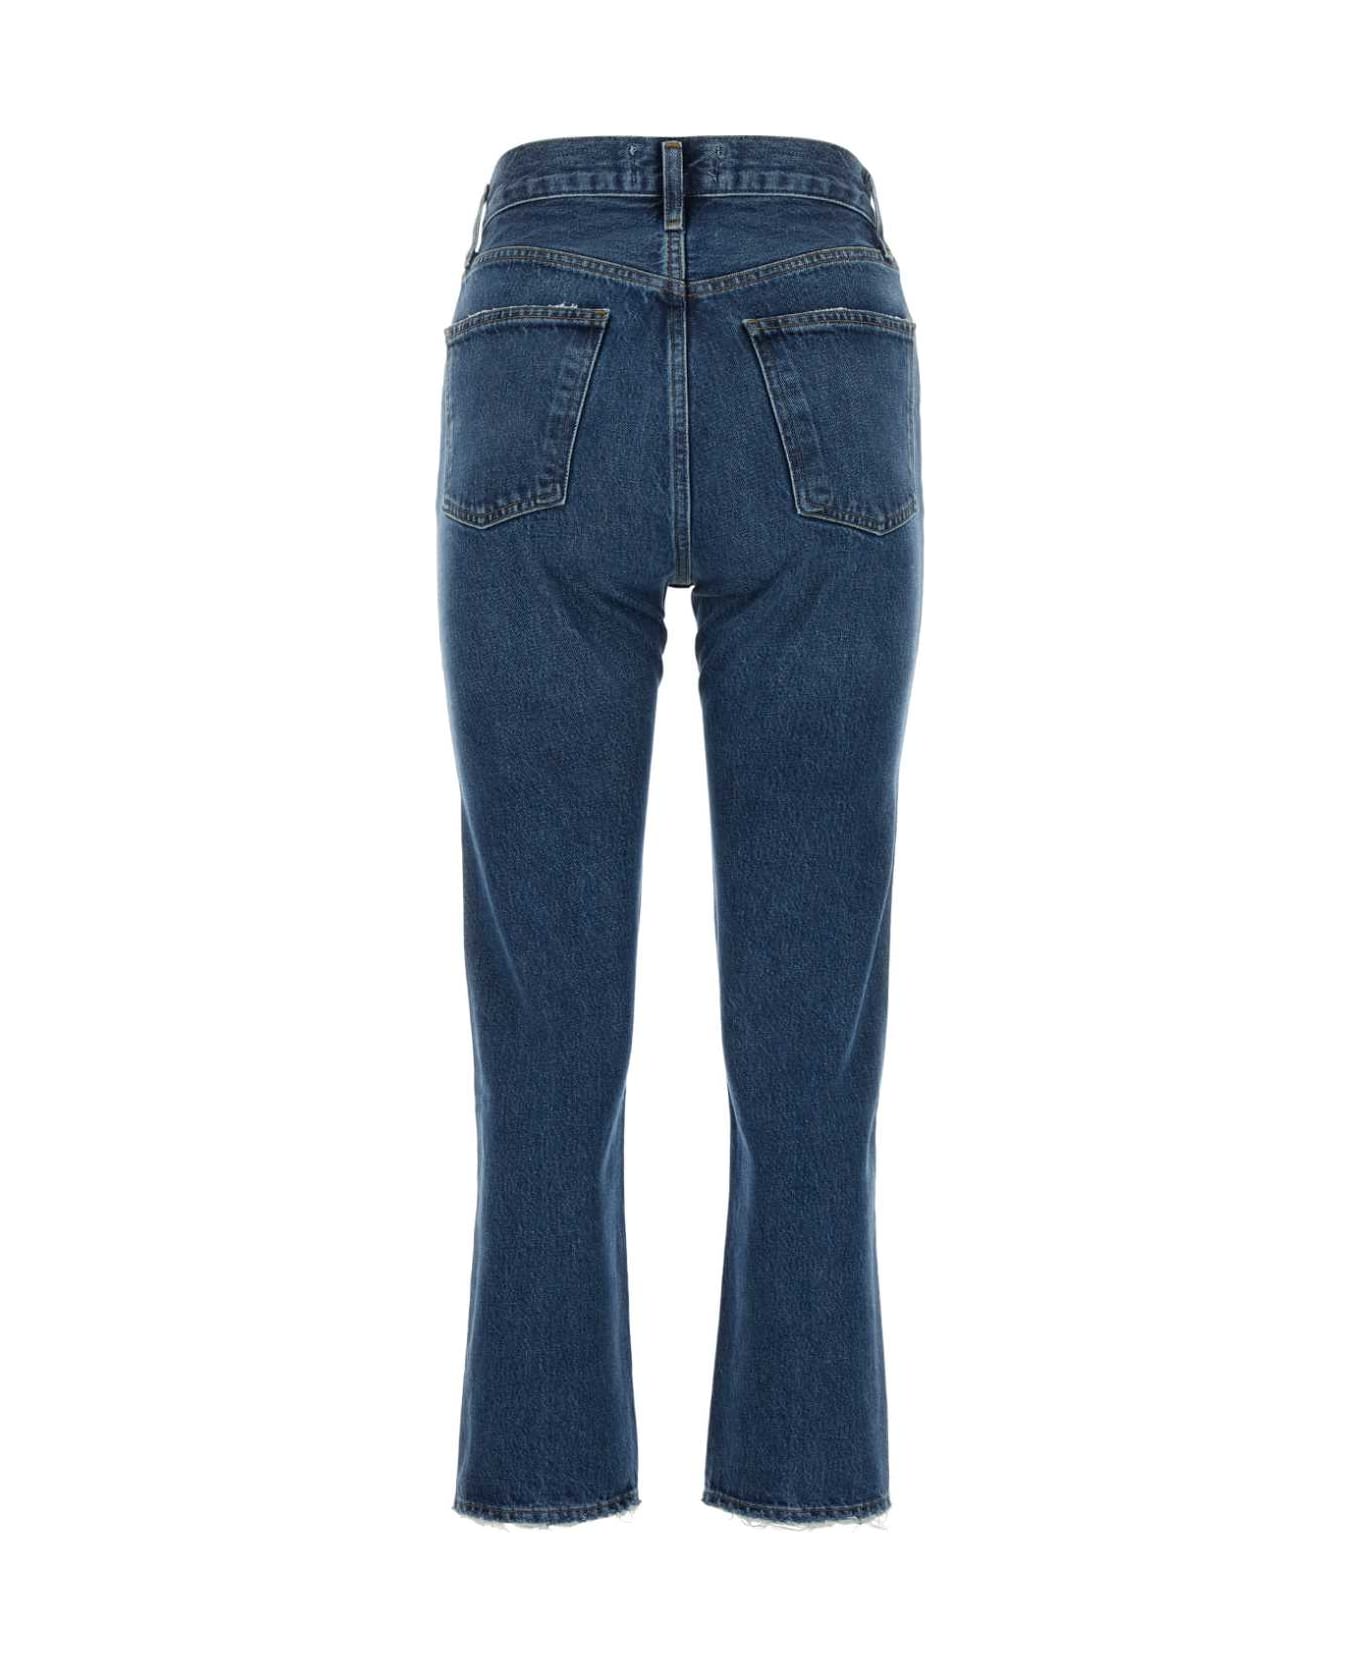 AGOLDE Denim Jeans - RNGE